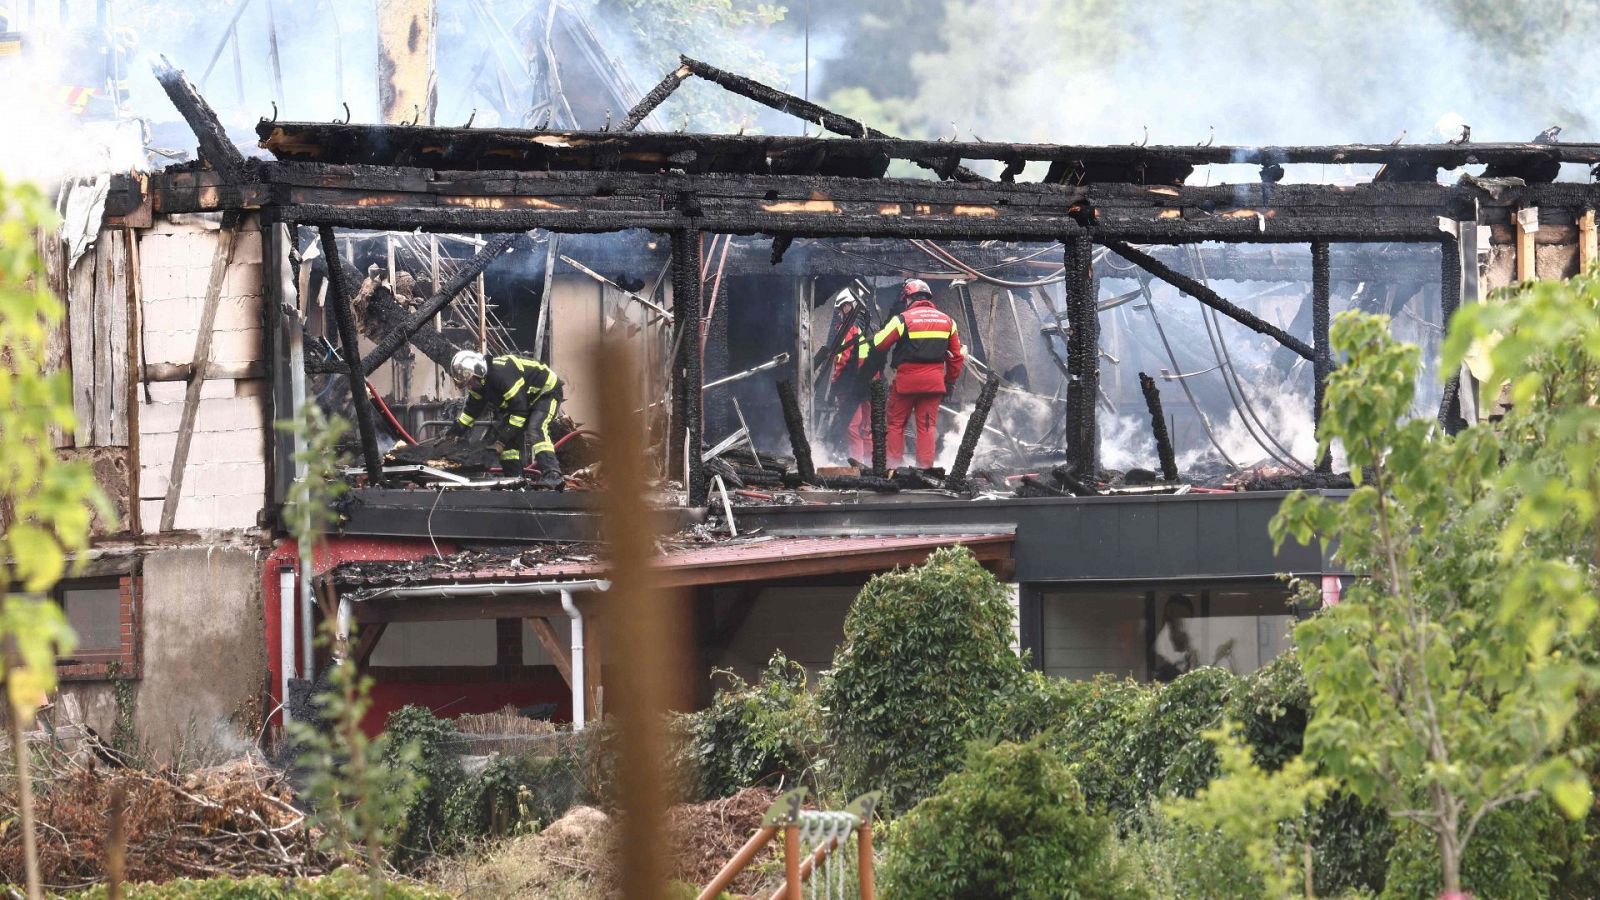 Bomberos trabajan en el albuergue incendiado en Francia , que aparece derruido